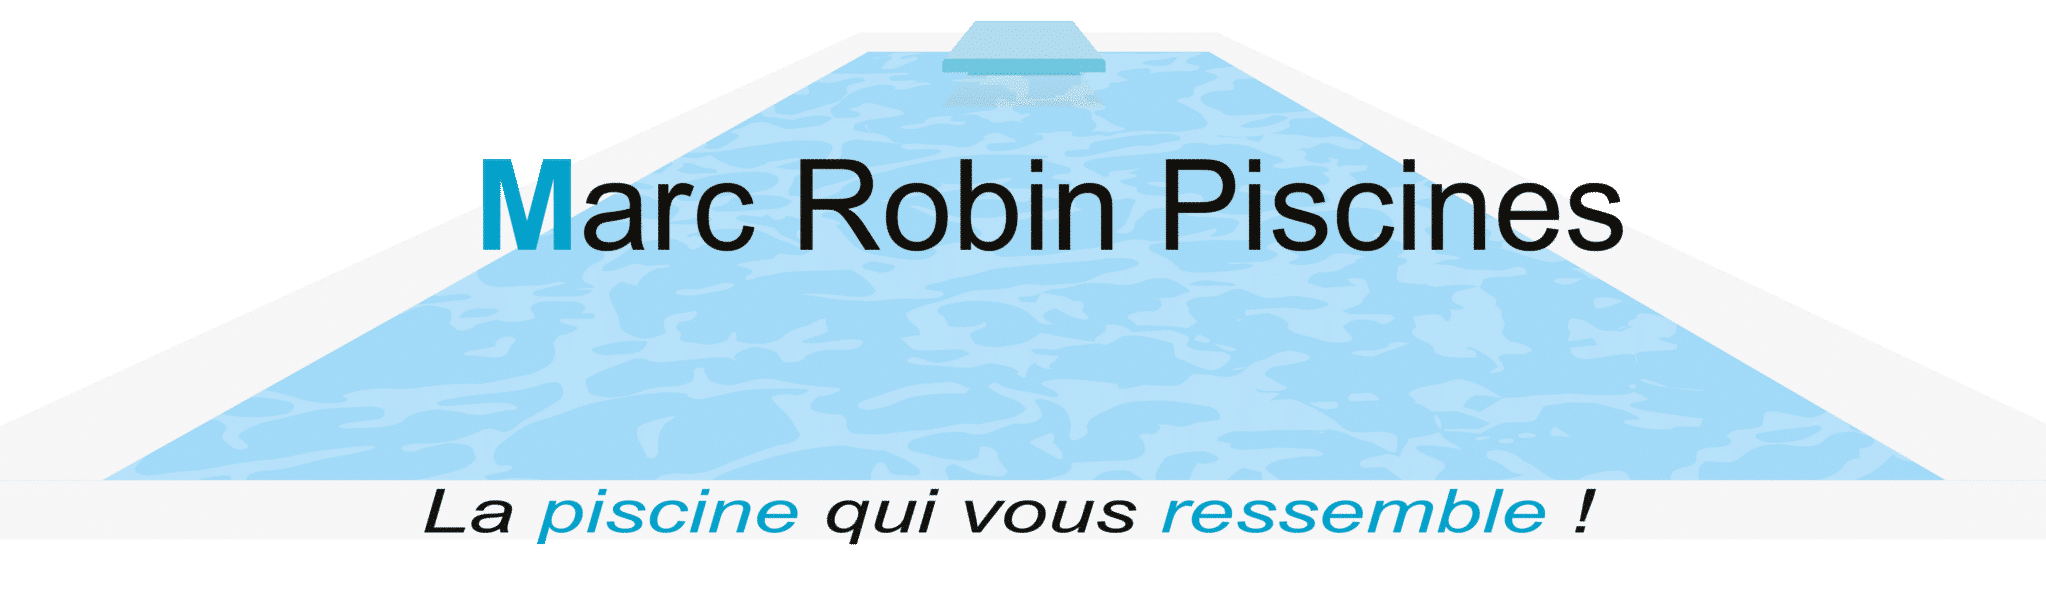 Marc Robin Piscines